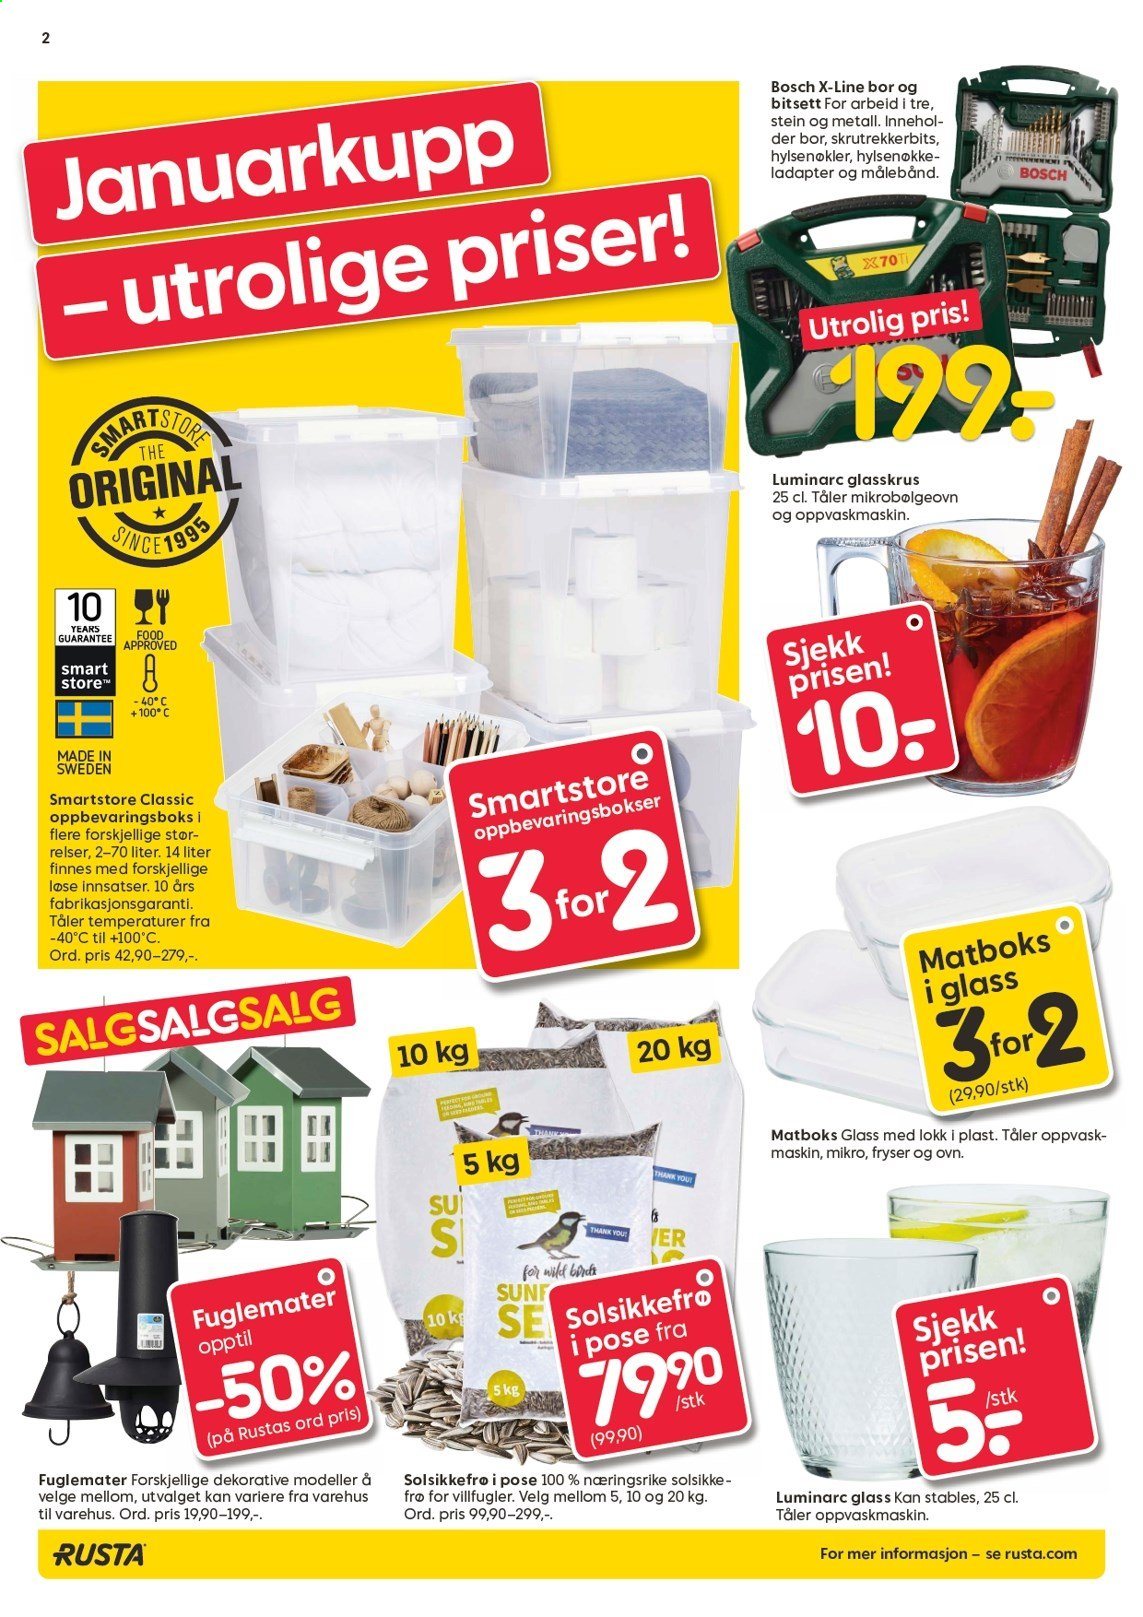 thumbnail - Kundeavis Rusta - 13.1.2021 - 19.1.2021 - Produkter fra tilbudsaviser - oppvaskmidler, oppbevaringsboks, matboks, fuglemater, solsikkefrø, Bosch. Side 2.